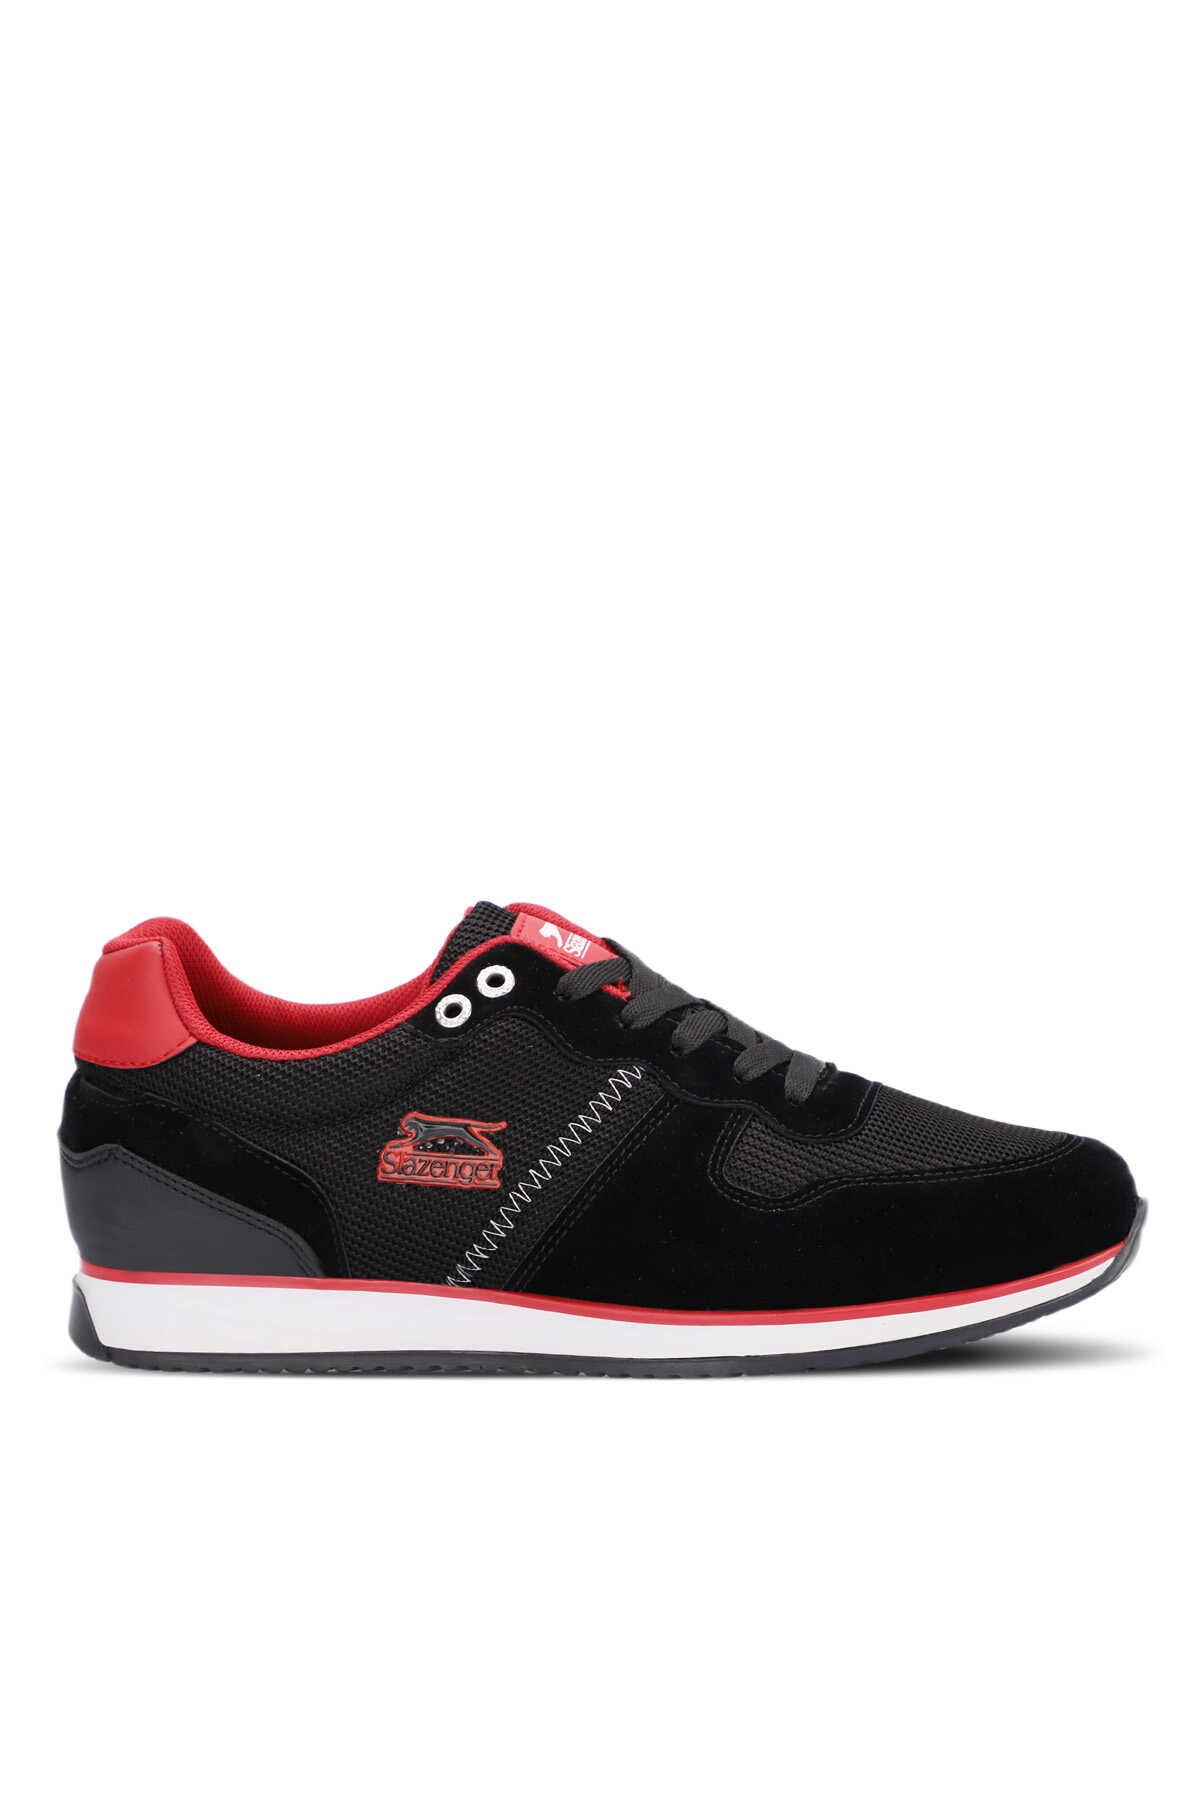 Slazenger - Slazenger ORGANIZE I Sneaker Erkek Ayakkabı Siyah / Kırmızı